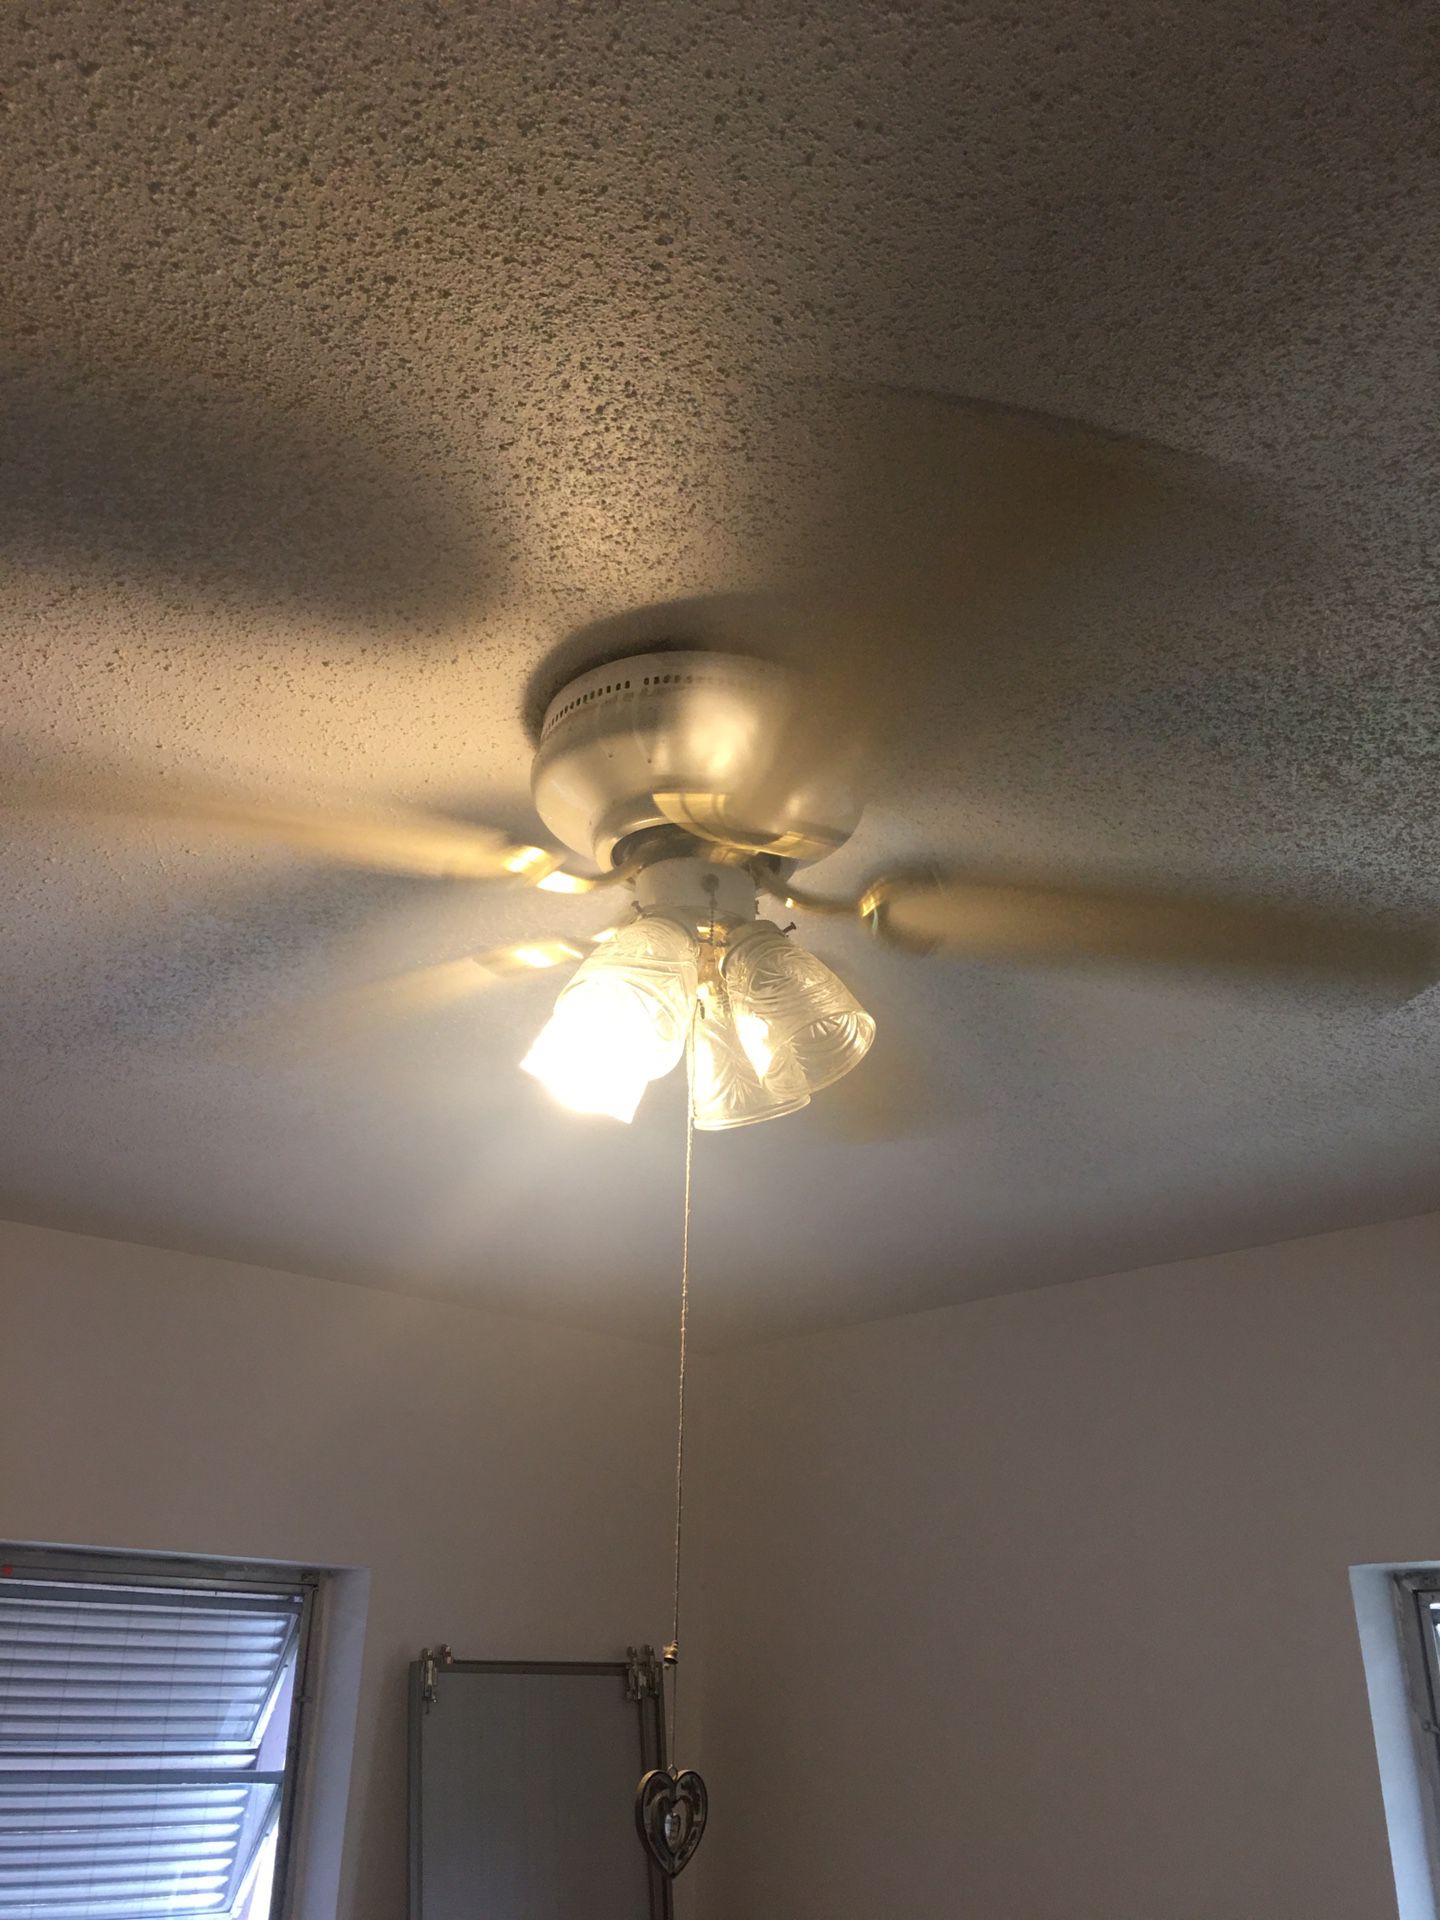 Ceiling fan n light fixtures